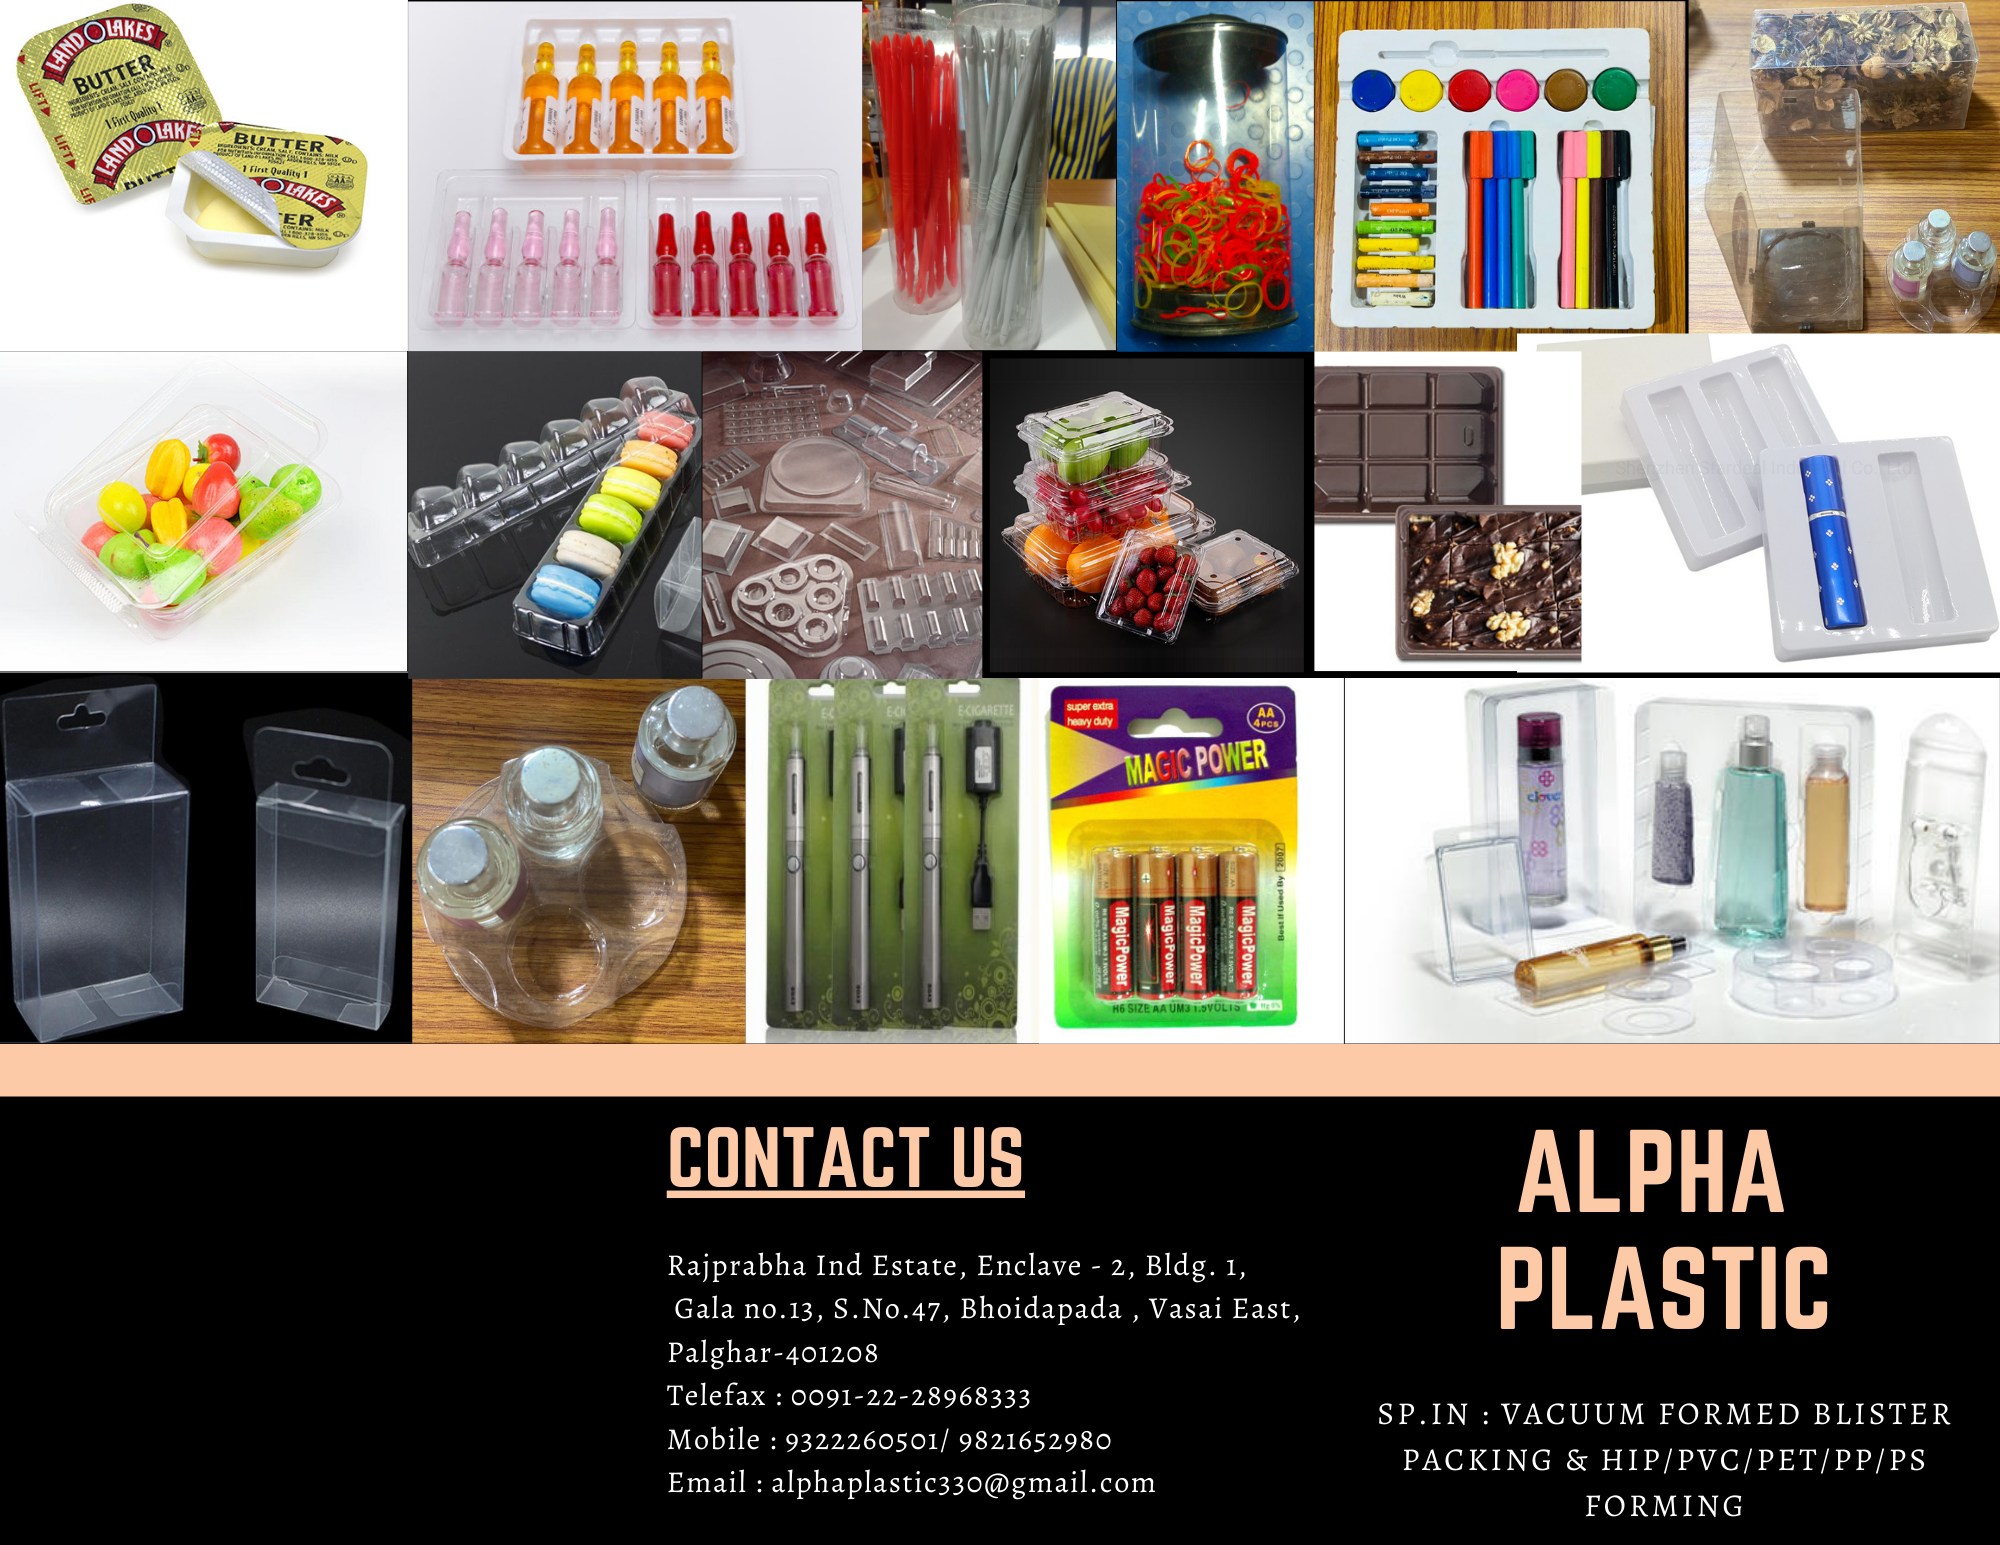 865214_ALPHA PLASTIC - Brochure.png